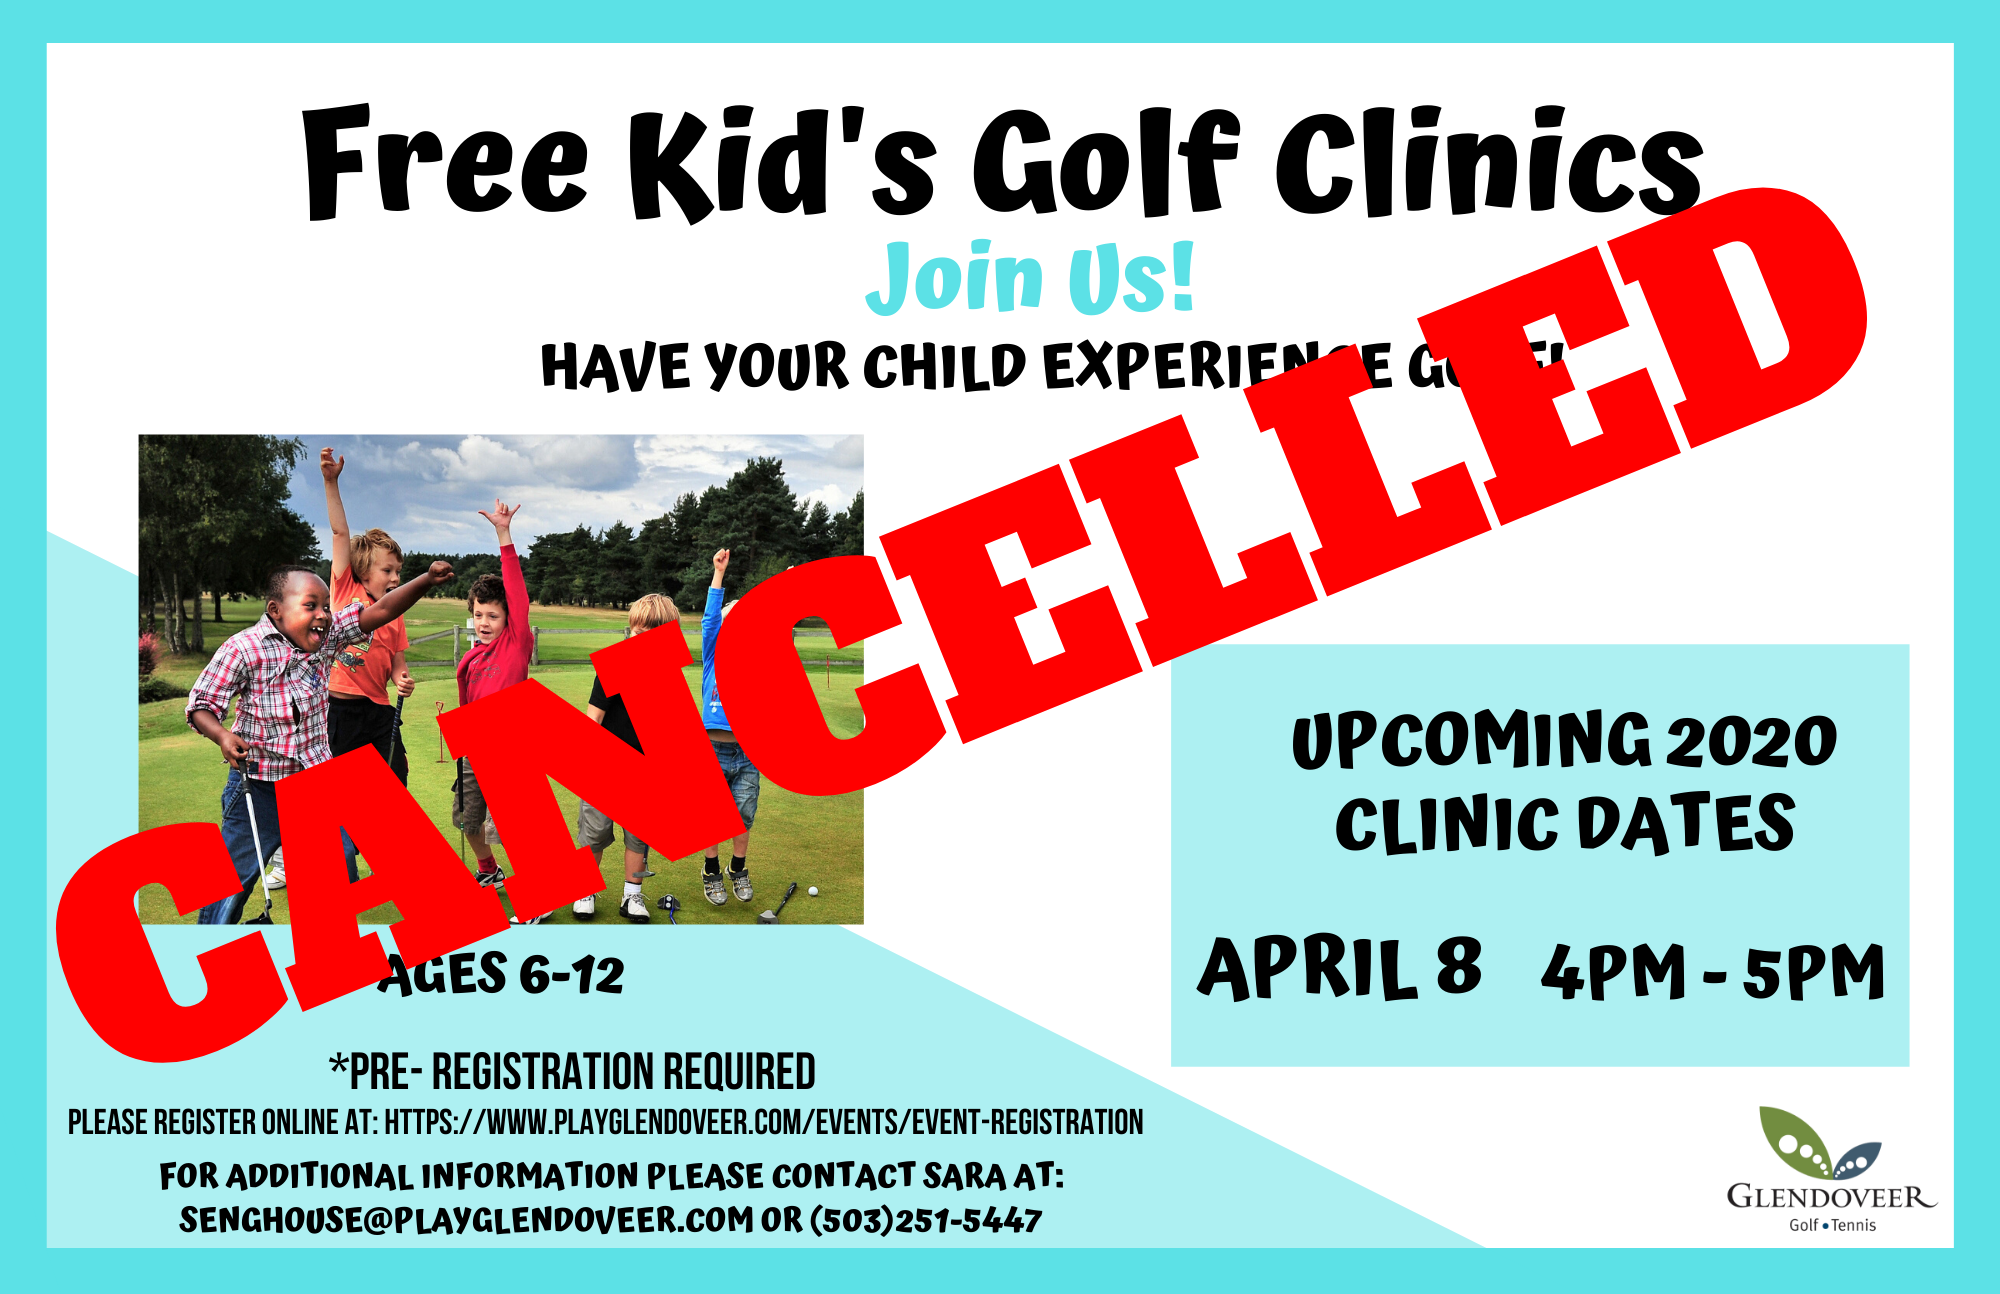 Free Kids Golf Clinics